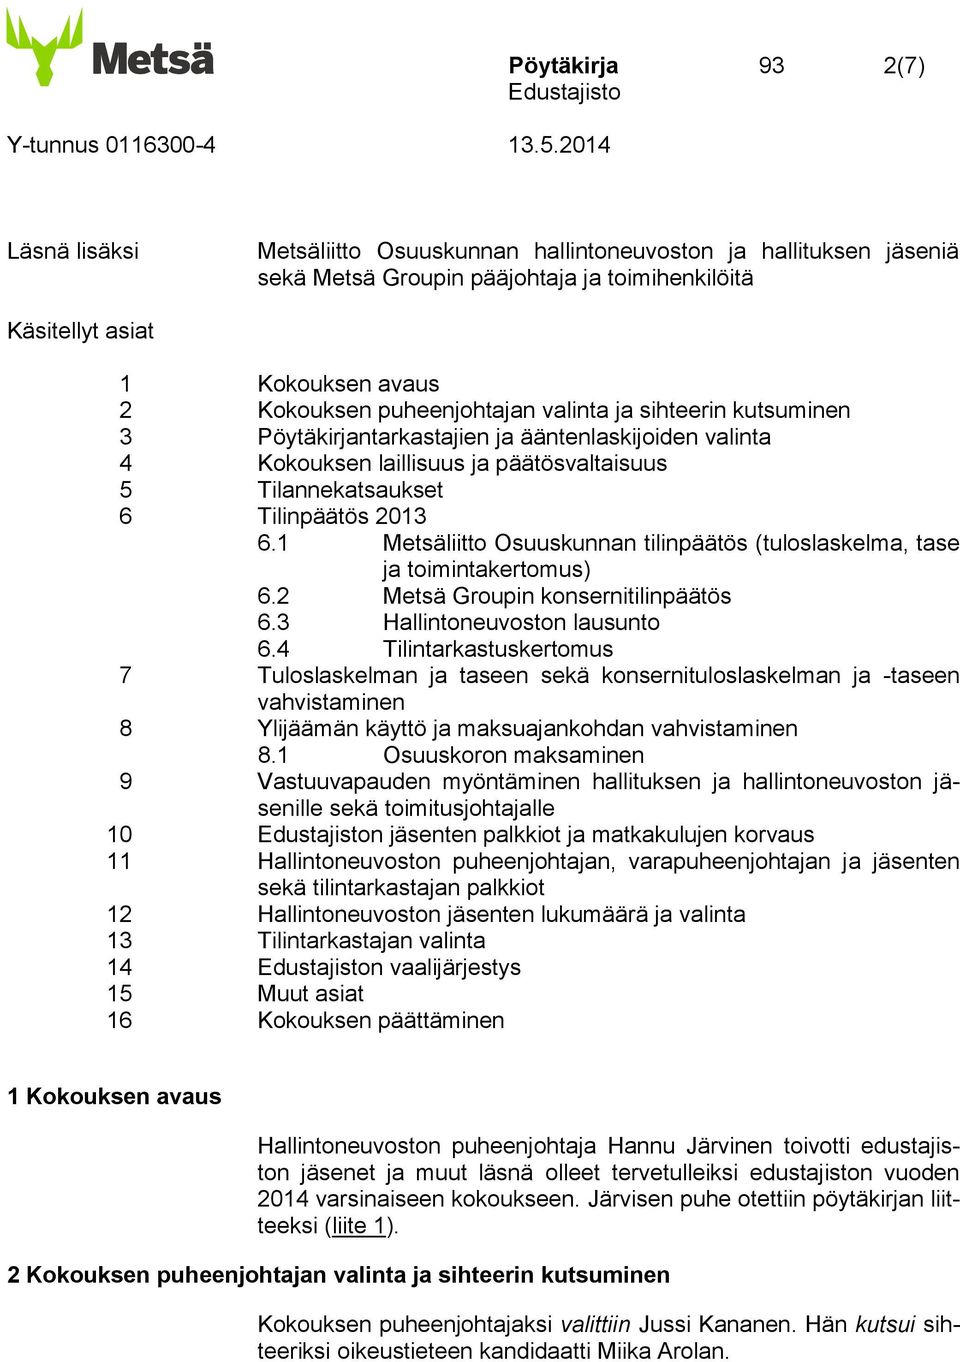 1 Metsäliitto Osuuskunnan tilinpäätös (tuloslaskelma, tase ja toimintakertomus) 6.2 Metsä Groupin konsernitilinpäätös 6.3 Hallintoneuvoston lausunto 6.